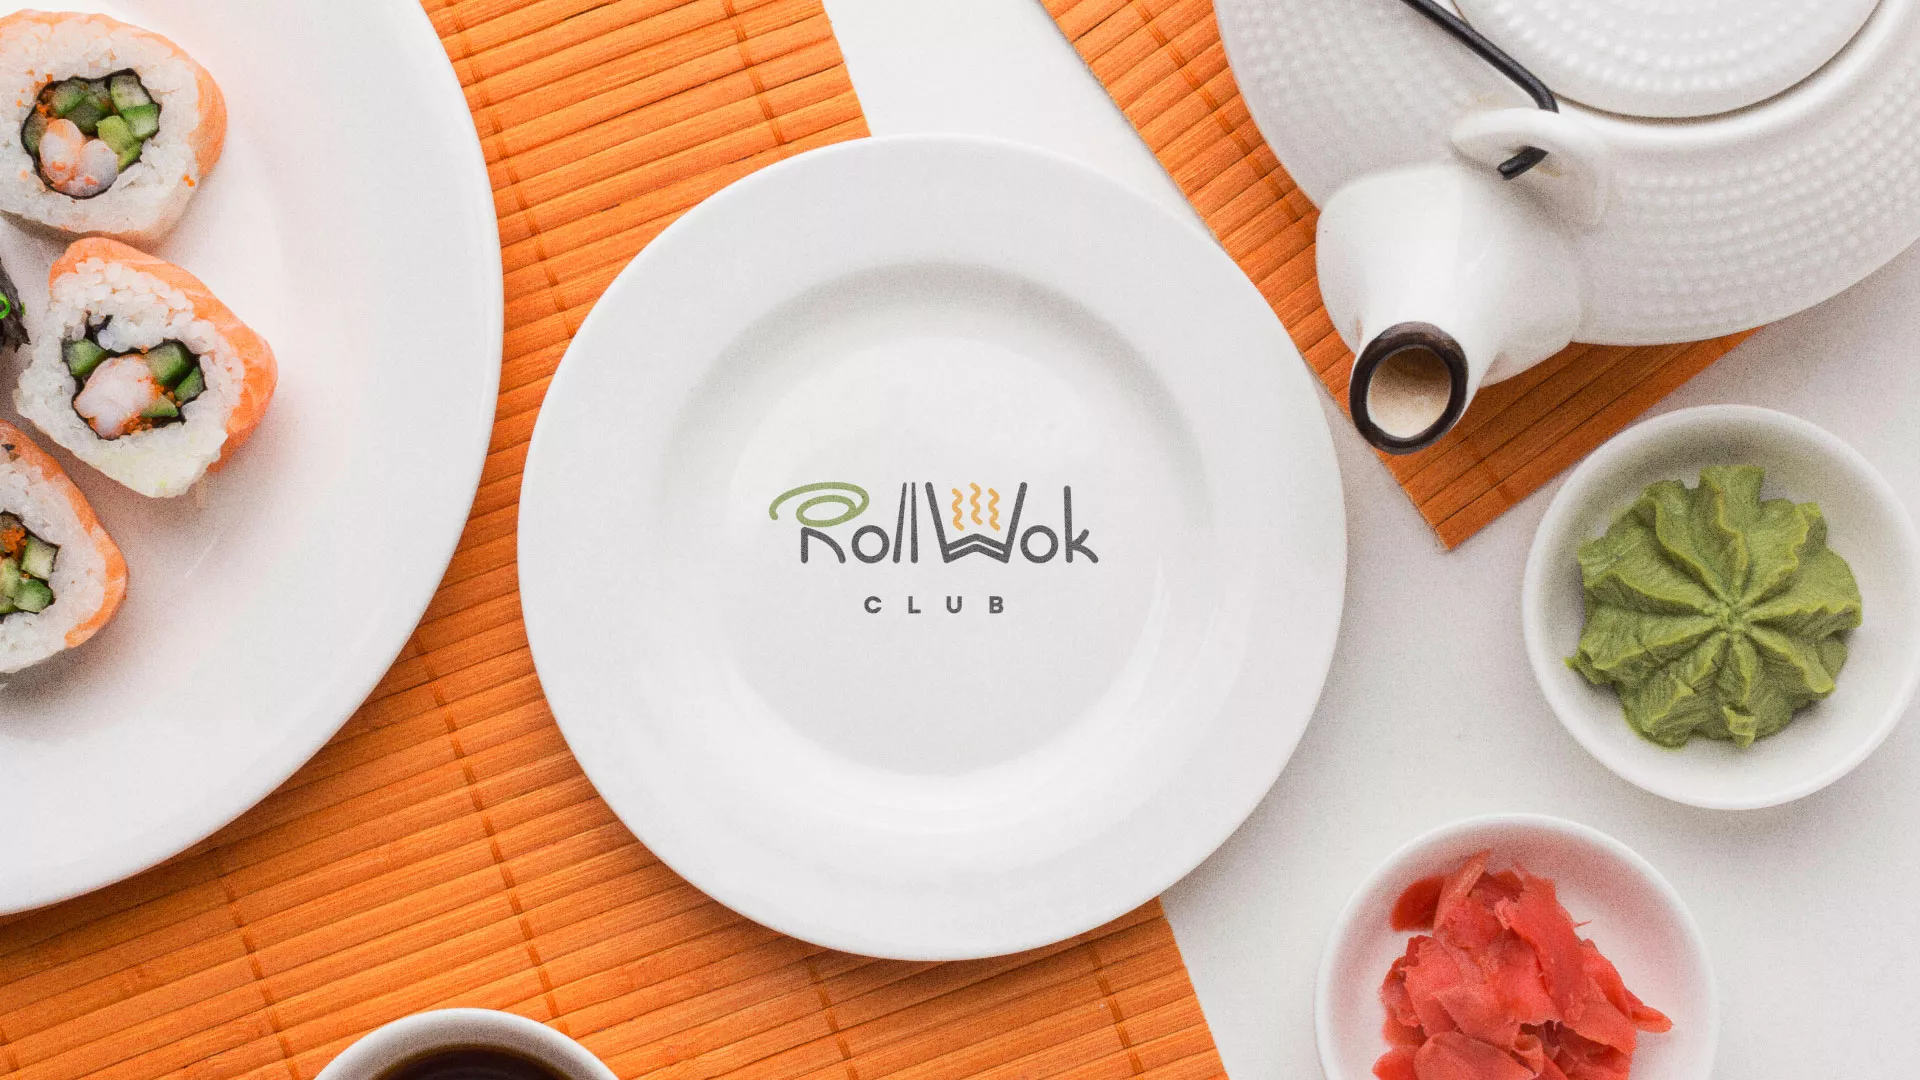 Разработка логотипа и фирменного стиля суши-бара «Roll Wok Club» в Сковородино